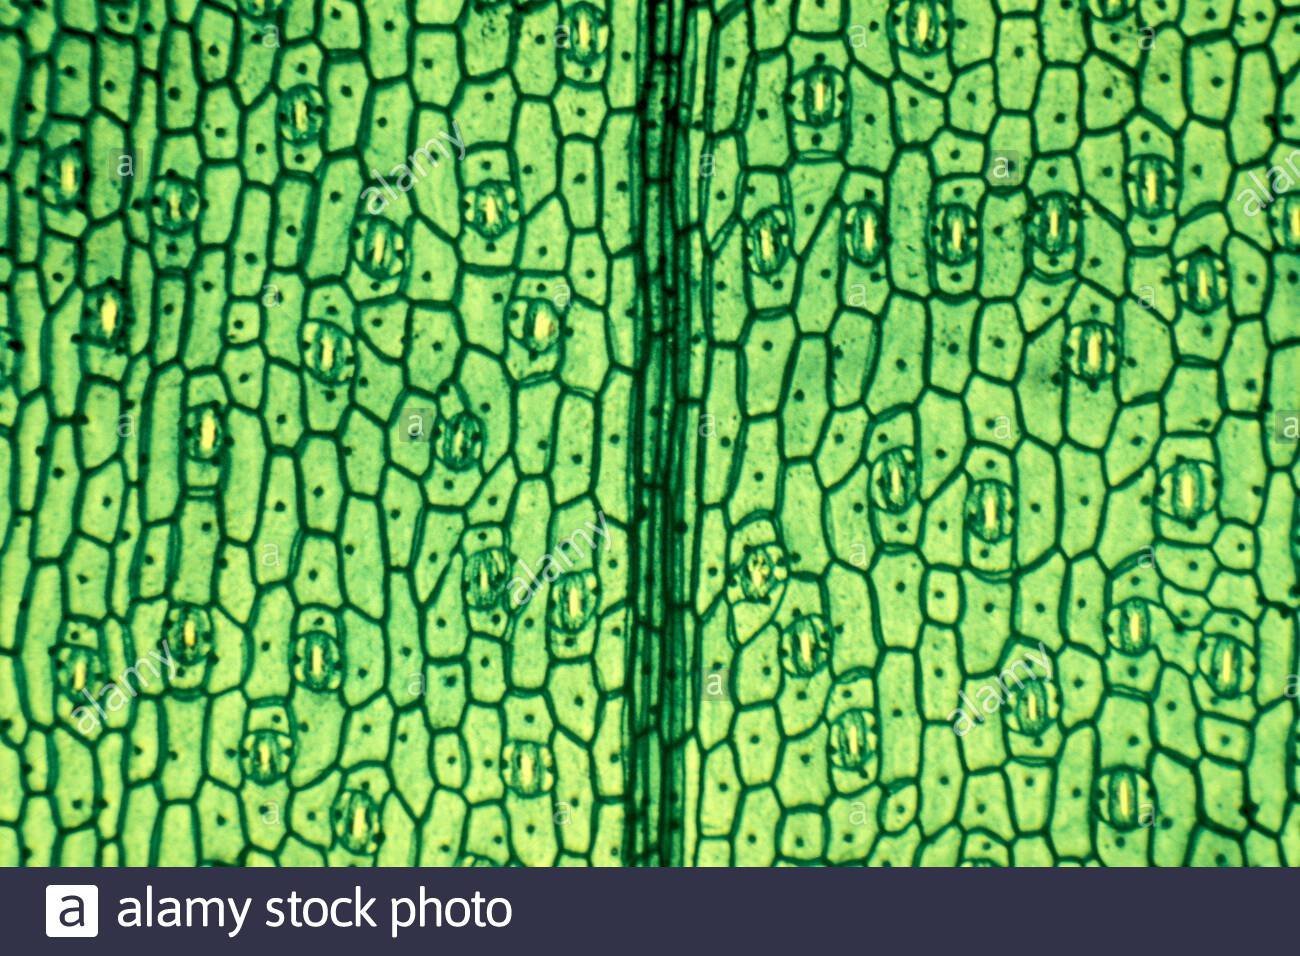 Клетка эпидермиса листа. Ткани растений эпидерма. Покровная ткань кожица листа. Клетки эпидермиса листа традесканции. Микропрепарат эпидермис листа герани.